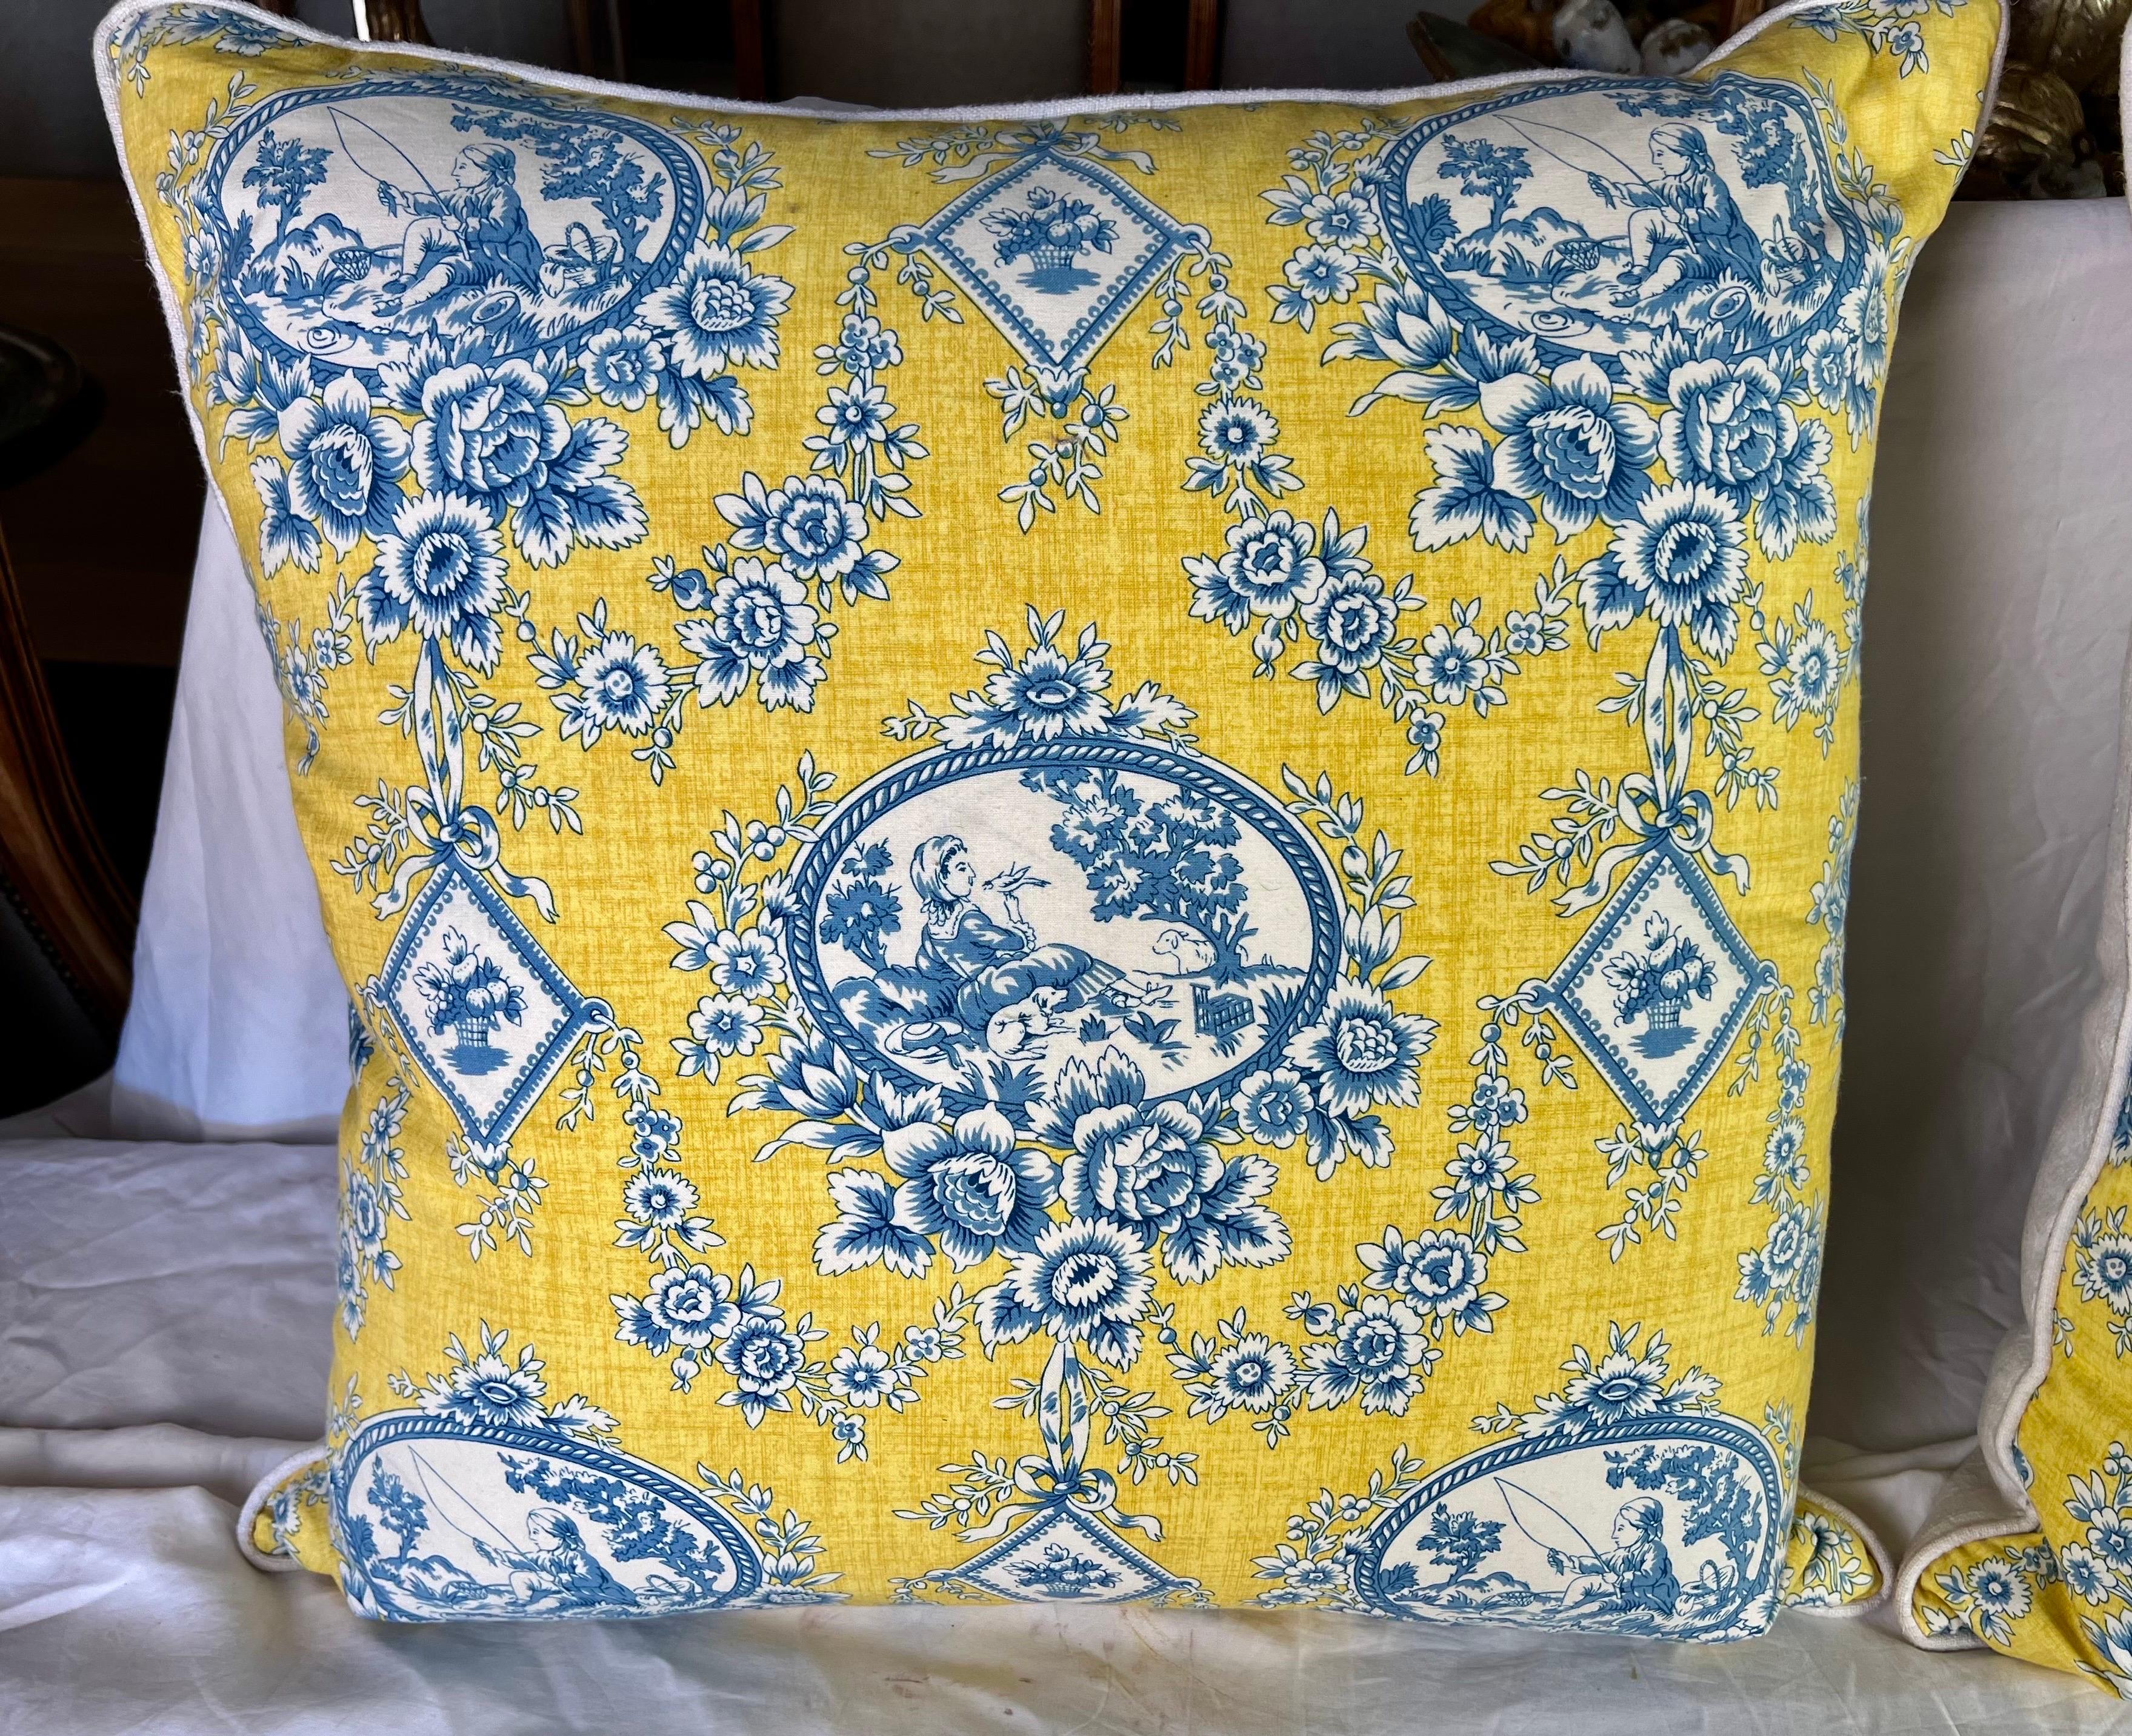 Diese Kissen aus dem 20. Jahrhundert haben ein Toile von Brunschwig & Fils in leuchtenden Gelb- und Blautönen. Sie zeigen geometrische Muster, Rauten mit Blumenbouquets und bezaubernde Szenen von Kindern beim Fischen und beim Entspannen in